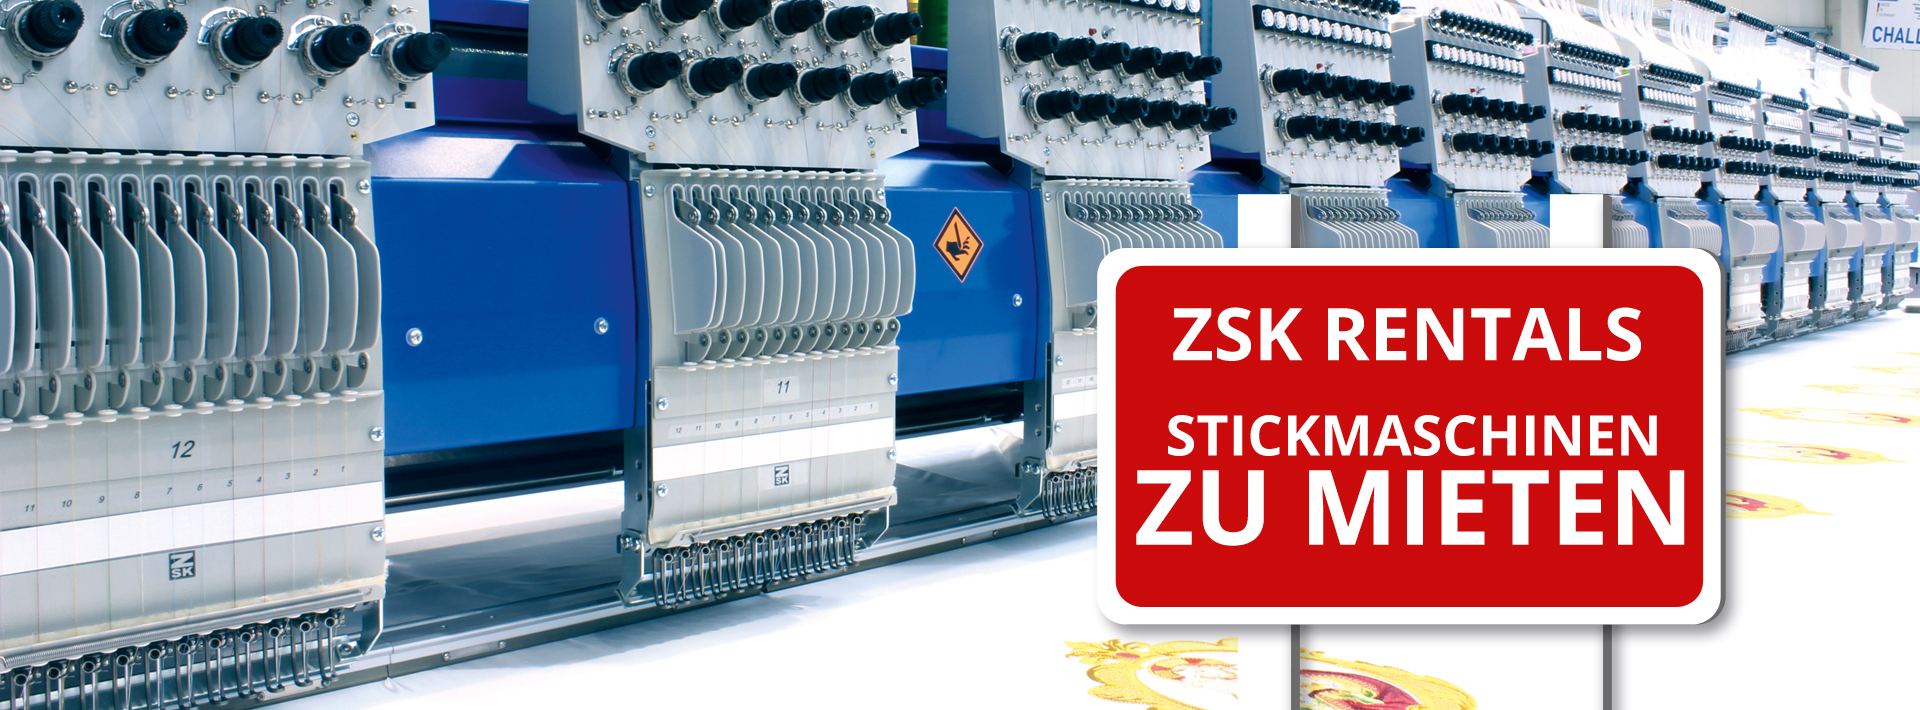 ZSK Stickmaschinen leihen mit ZSK Rentals